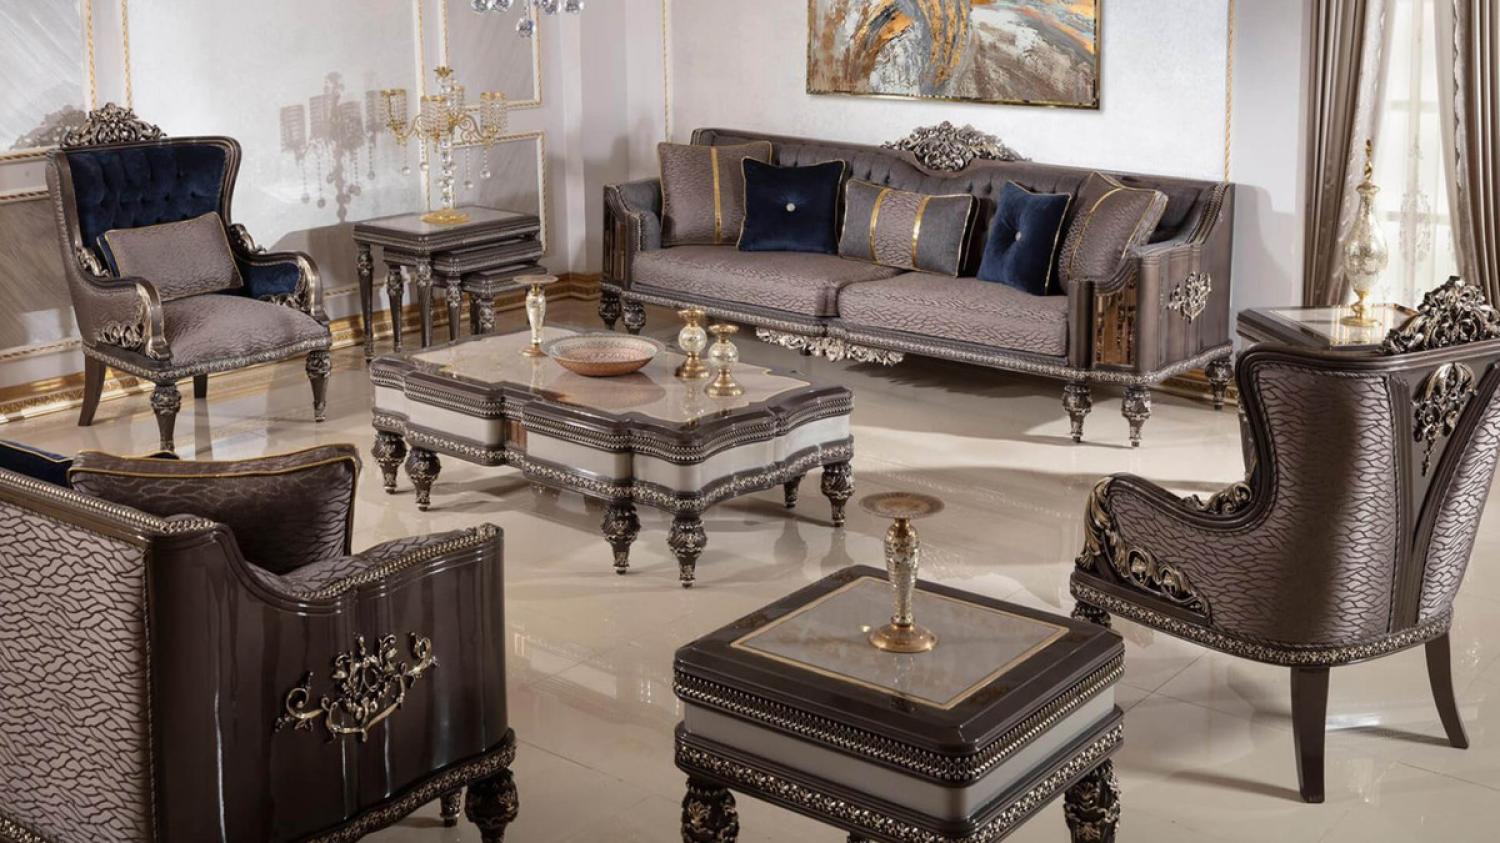 Casa Padrino Luxus Barock Wohnzimmer Set Grau / Dunkelbraun / Gold - 2 Sofas & 2 Sessel & 1 Couchtisch & 2 Beistelltische - Handgefertigte Wohnzimmer Möbel im Barockstil - Edel & Prunkvoll Bild 1